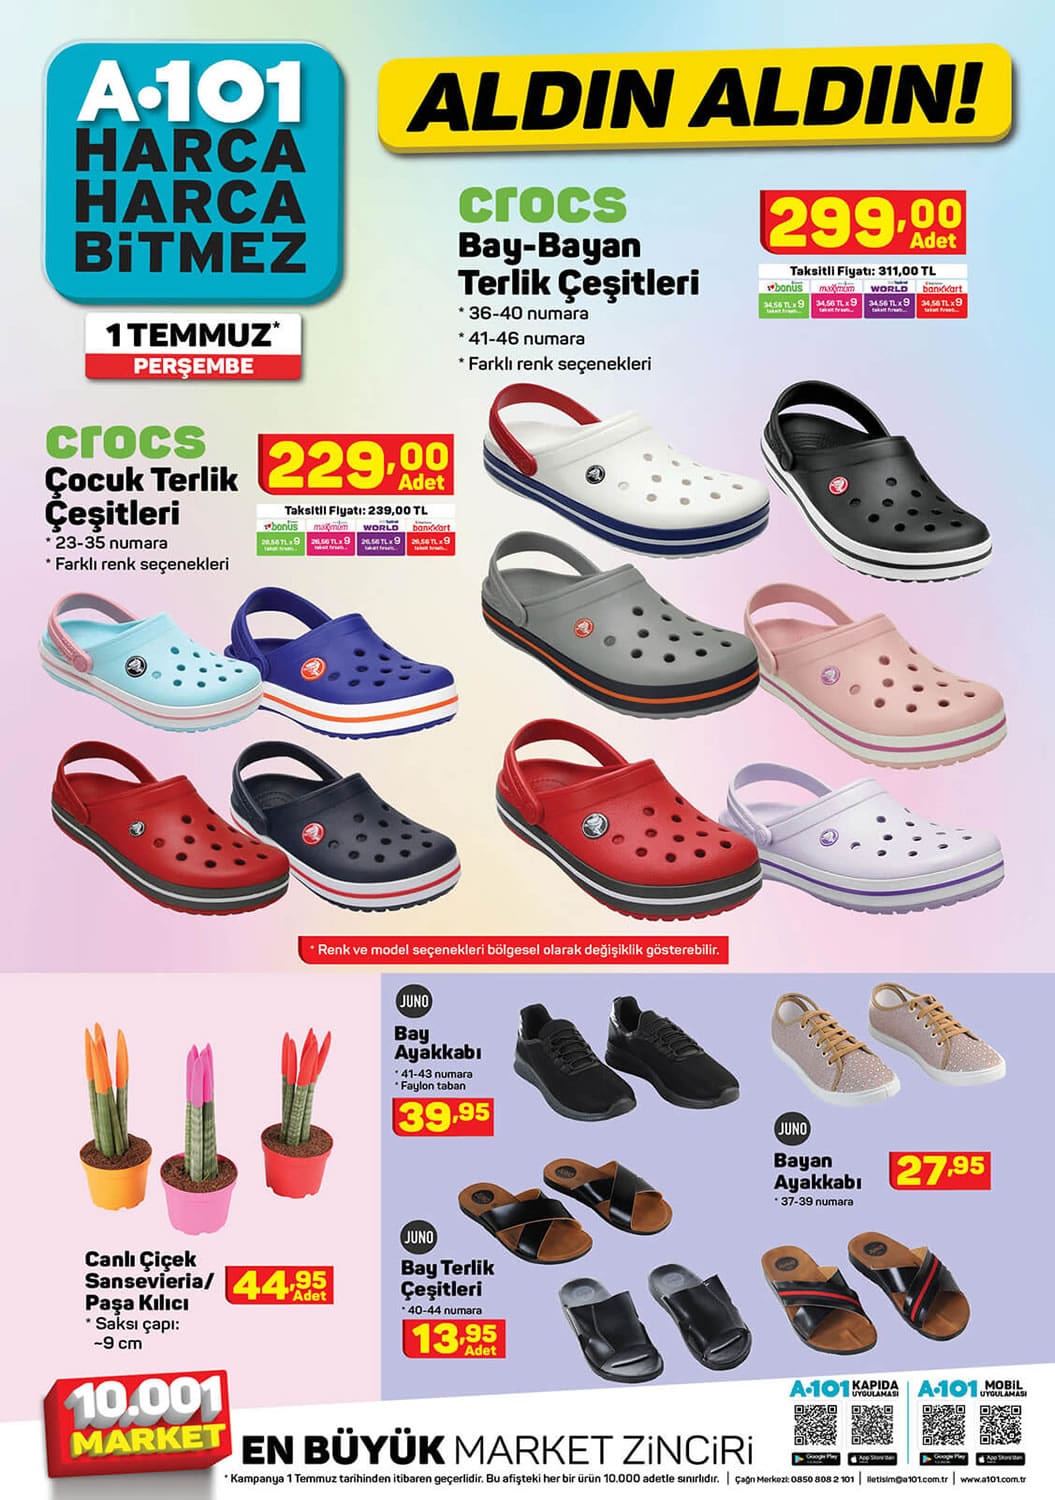 A101 1 Temmuz 2021 Crocs Terlik Fiyatları